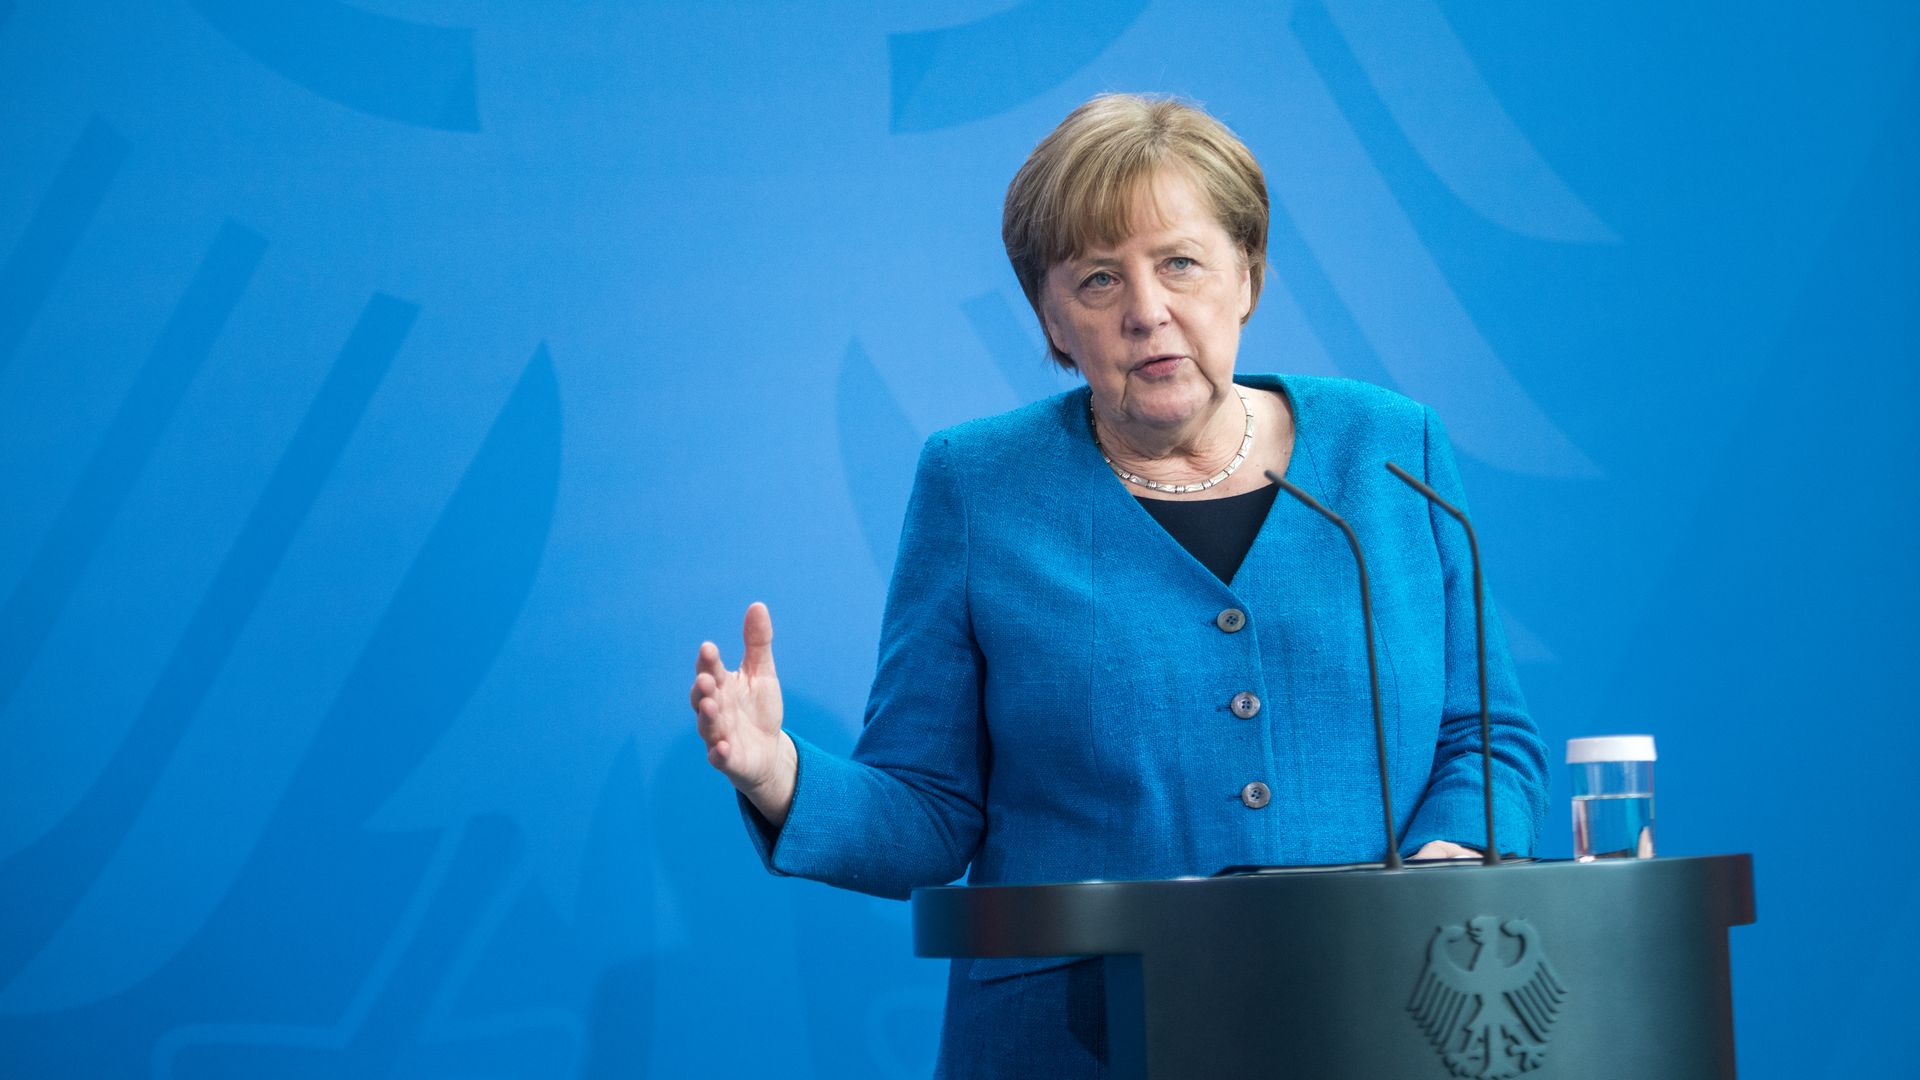  German Chancellor Angela Merkel speaking in Berlin on May 8.